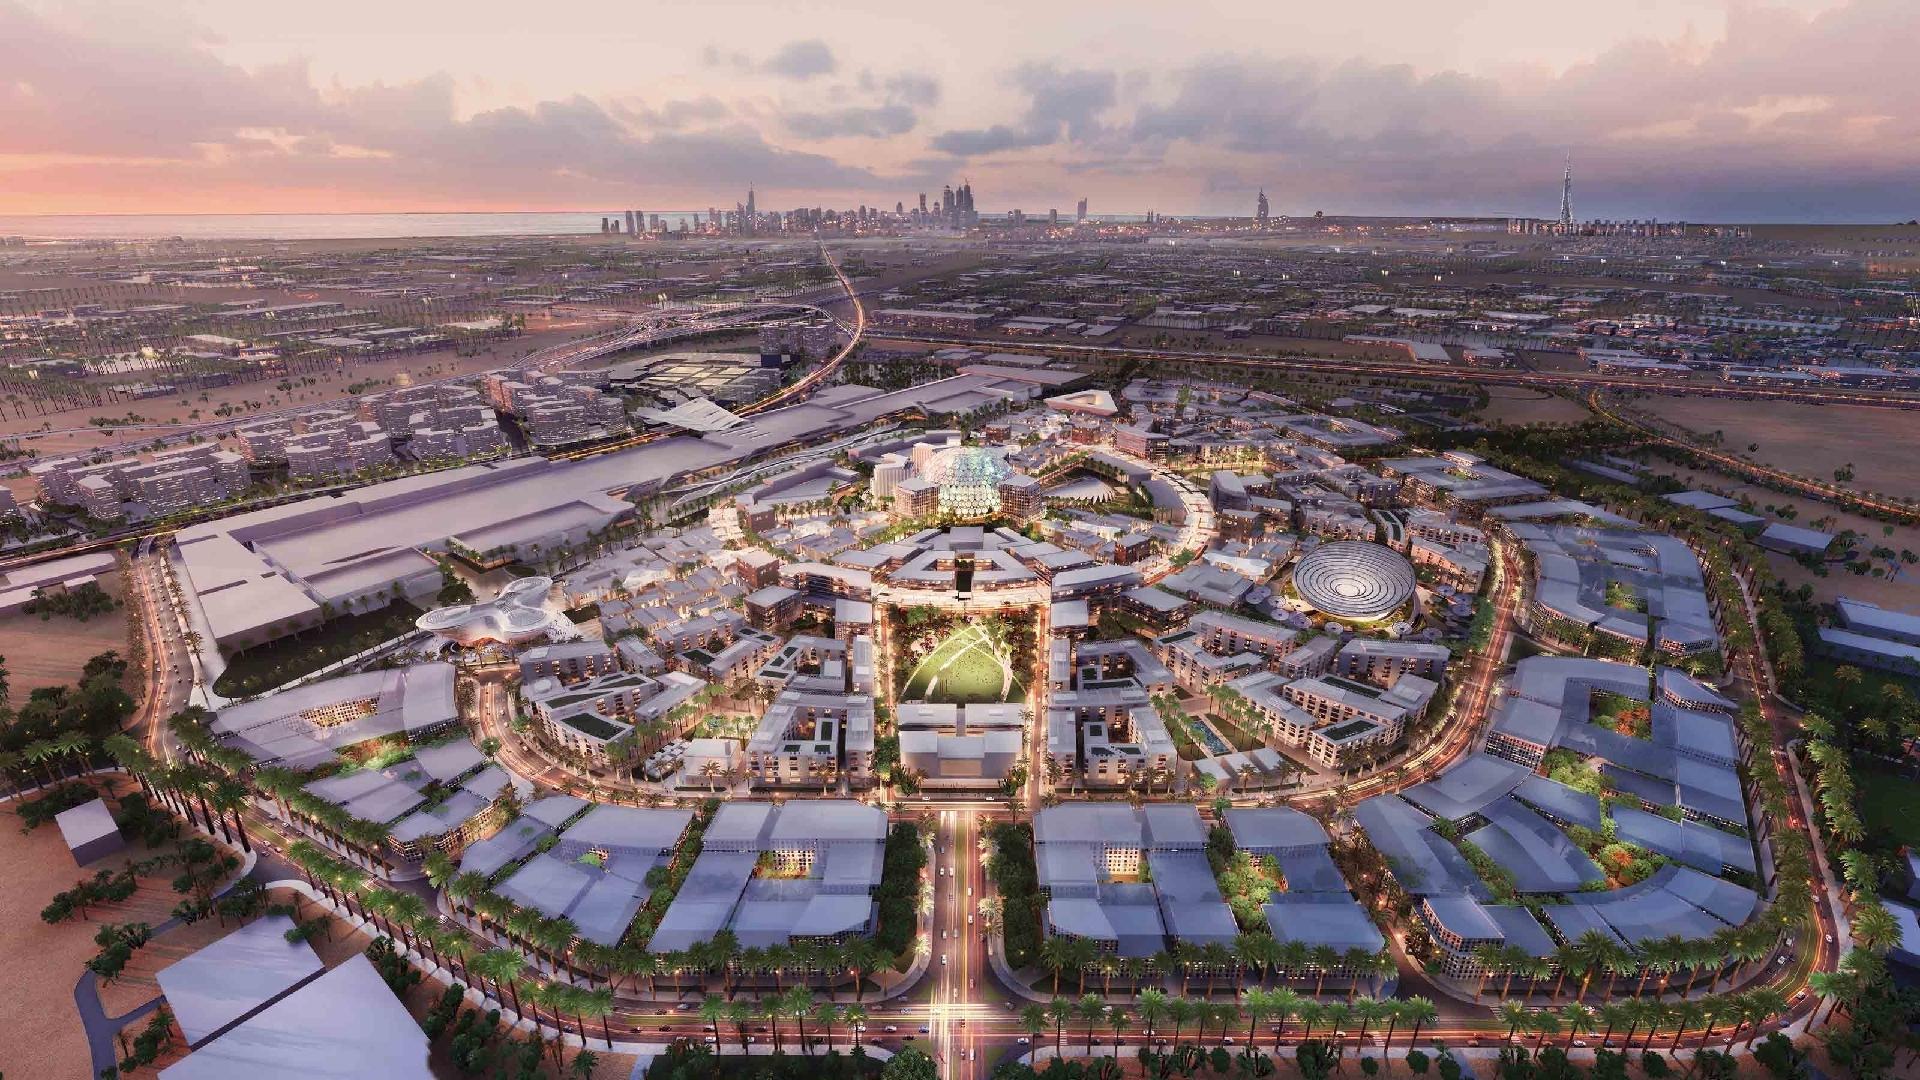 Expo 2020: Dubai prepara cidade inteligente e do futuro no deserto